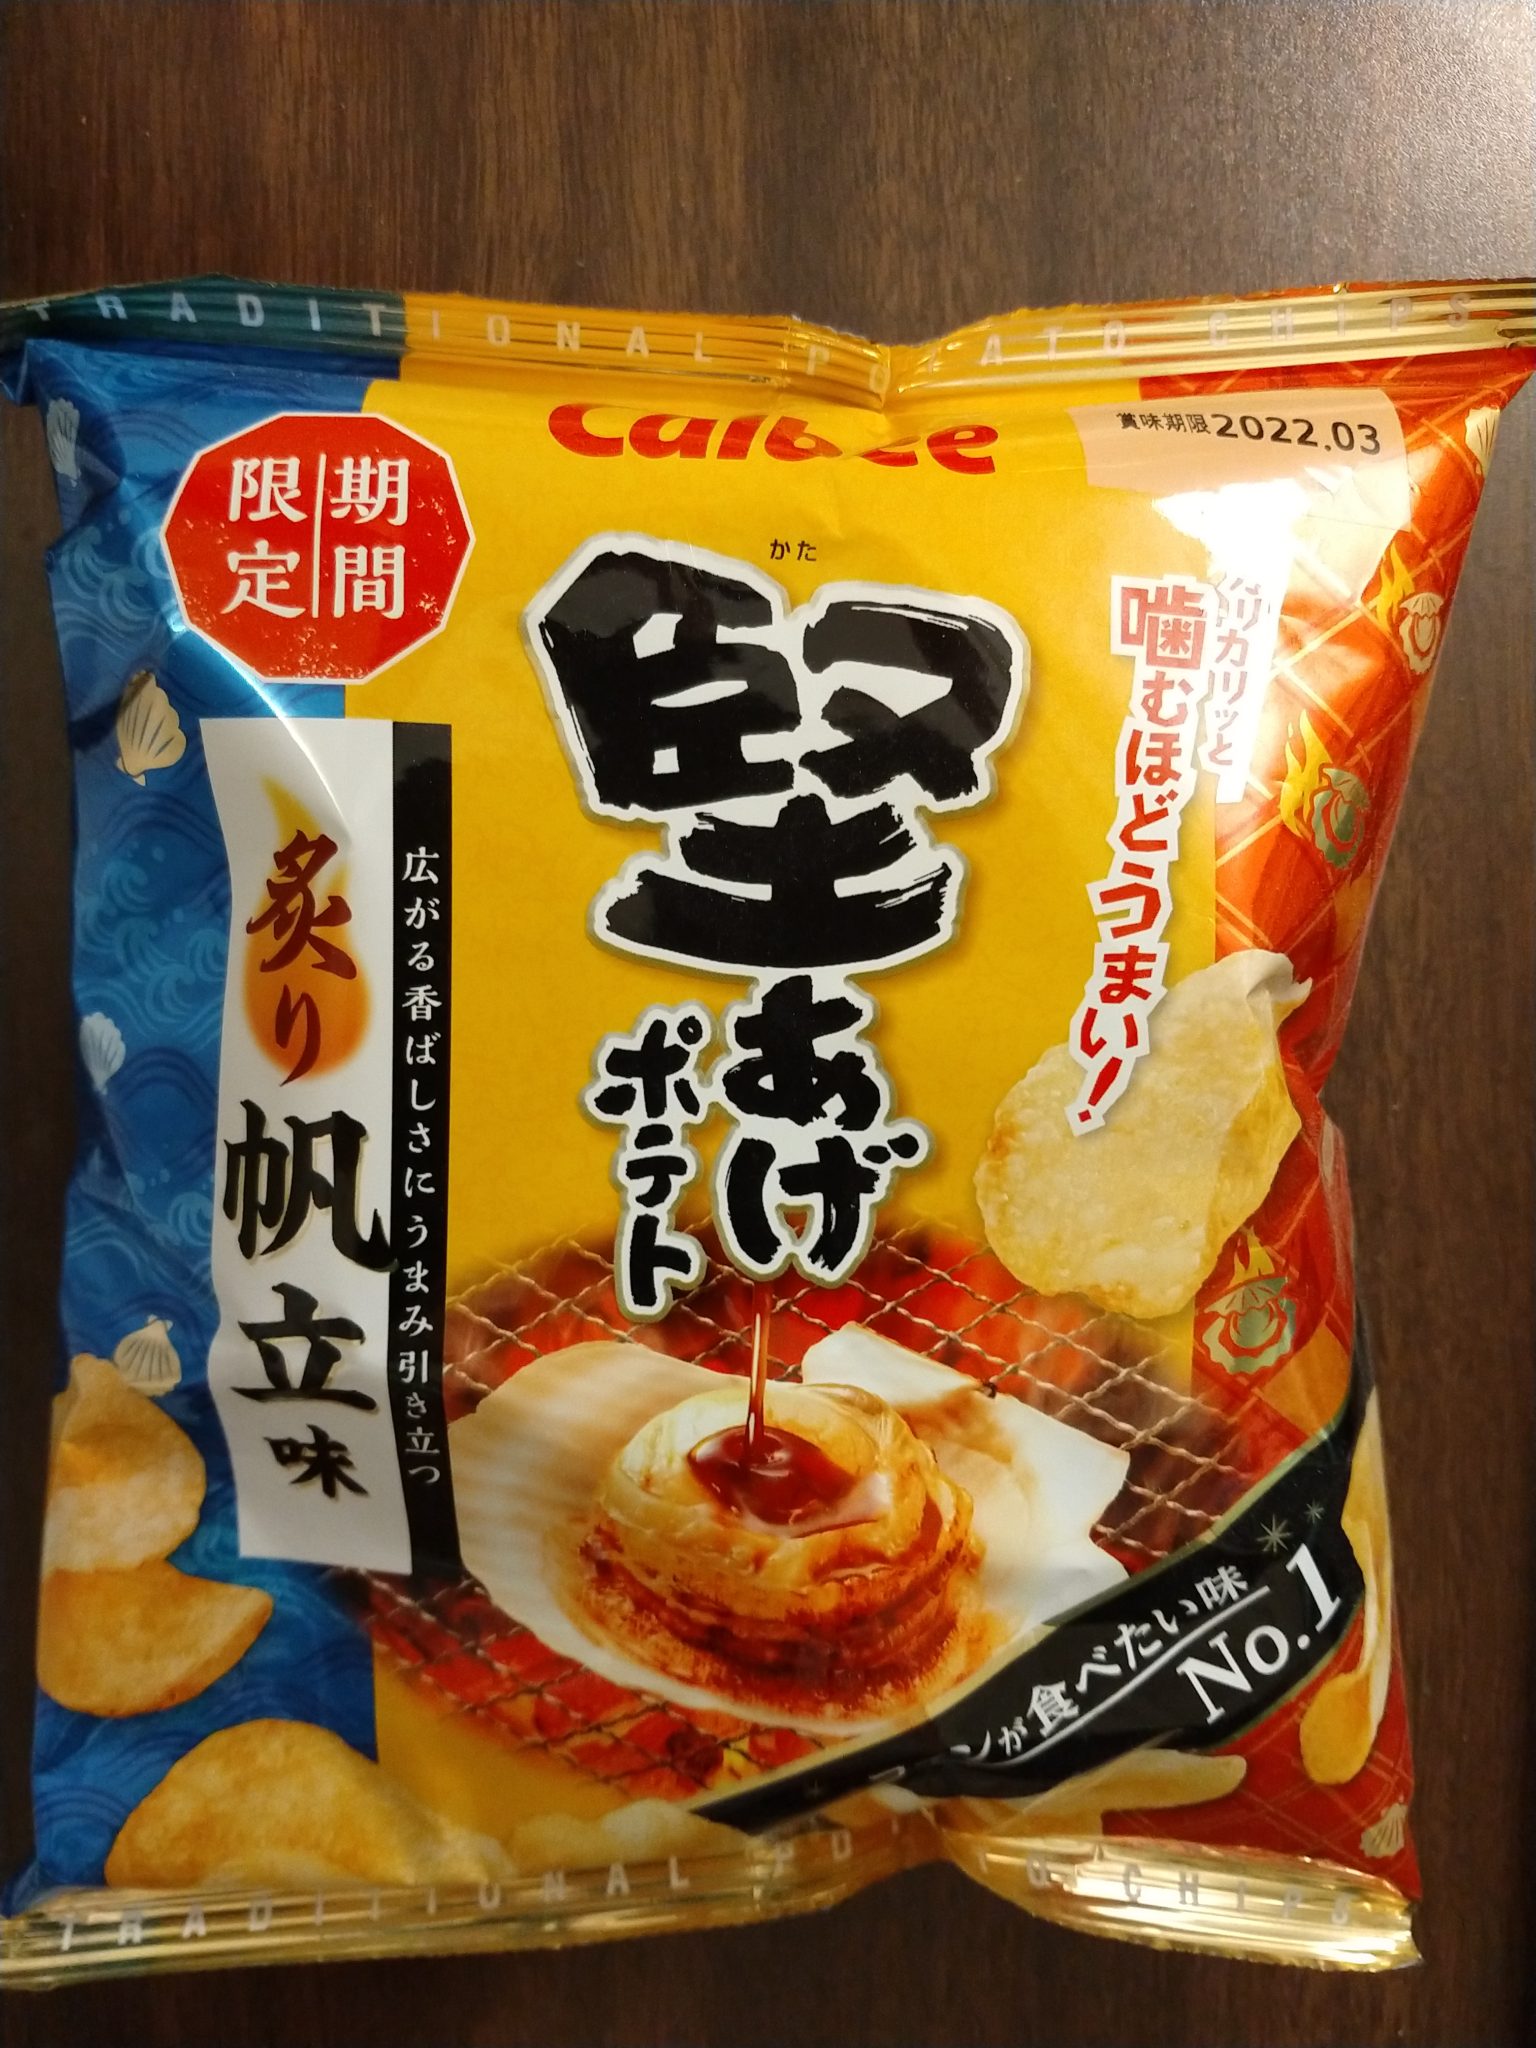 Calbee ‘Kata-Age’ Potato Chips – Scallop Butter